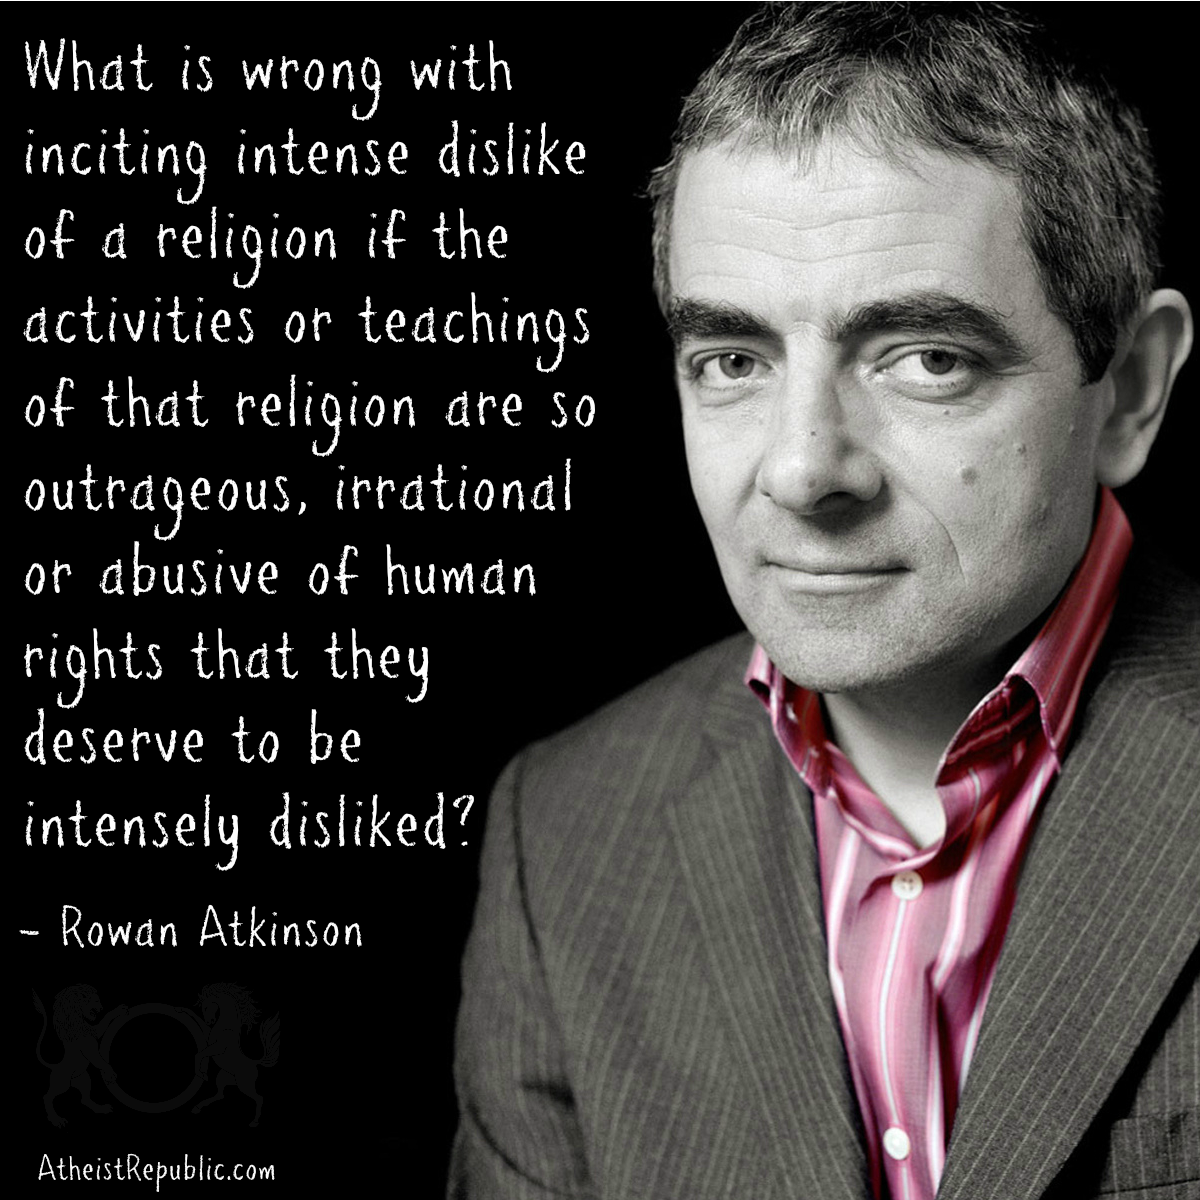 Rowan Atkinson Dislike of Religion